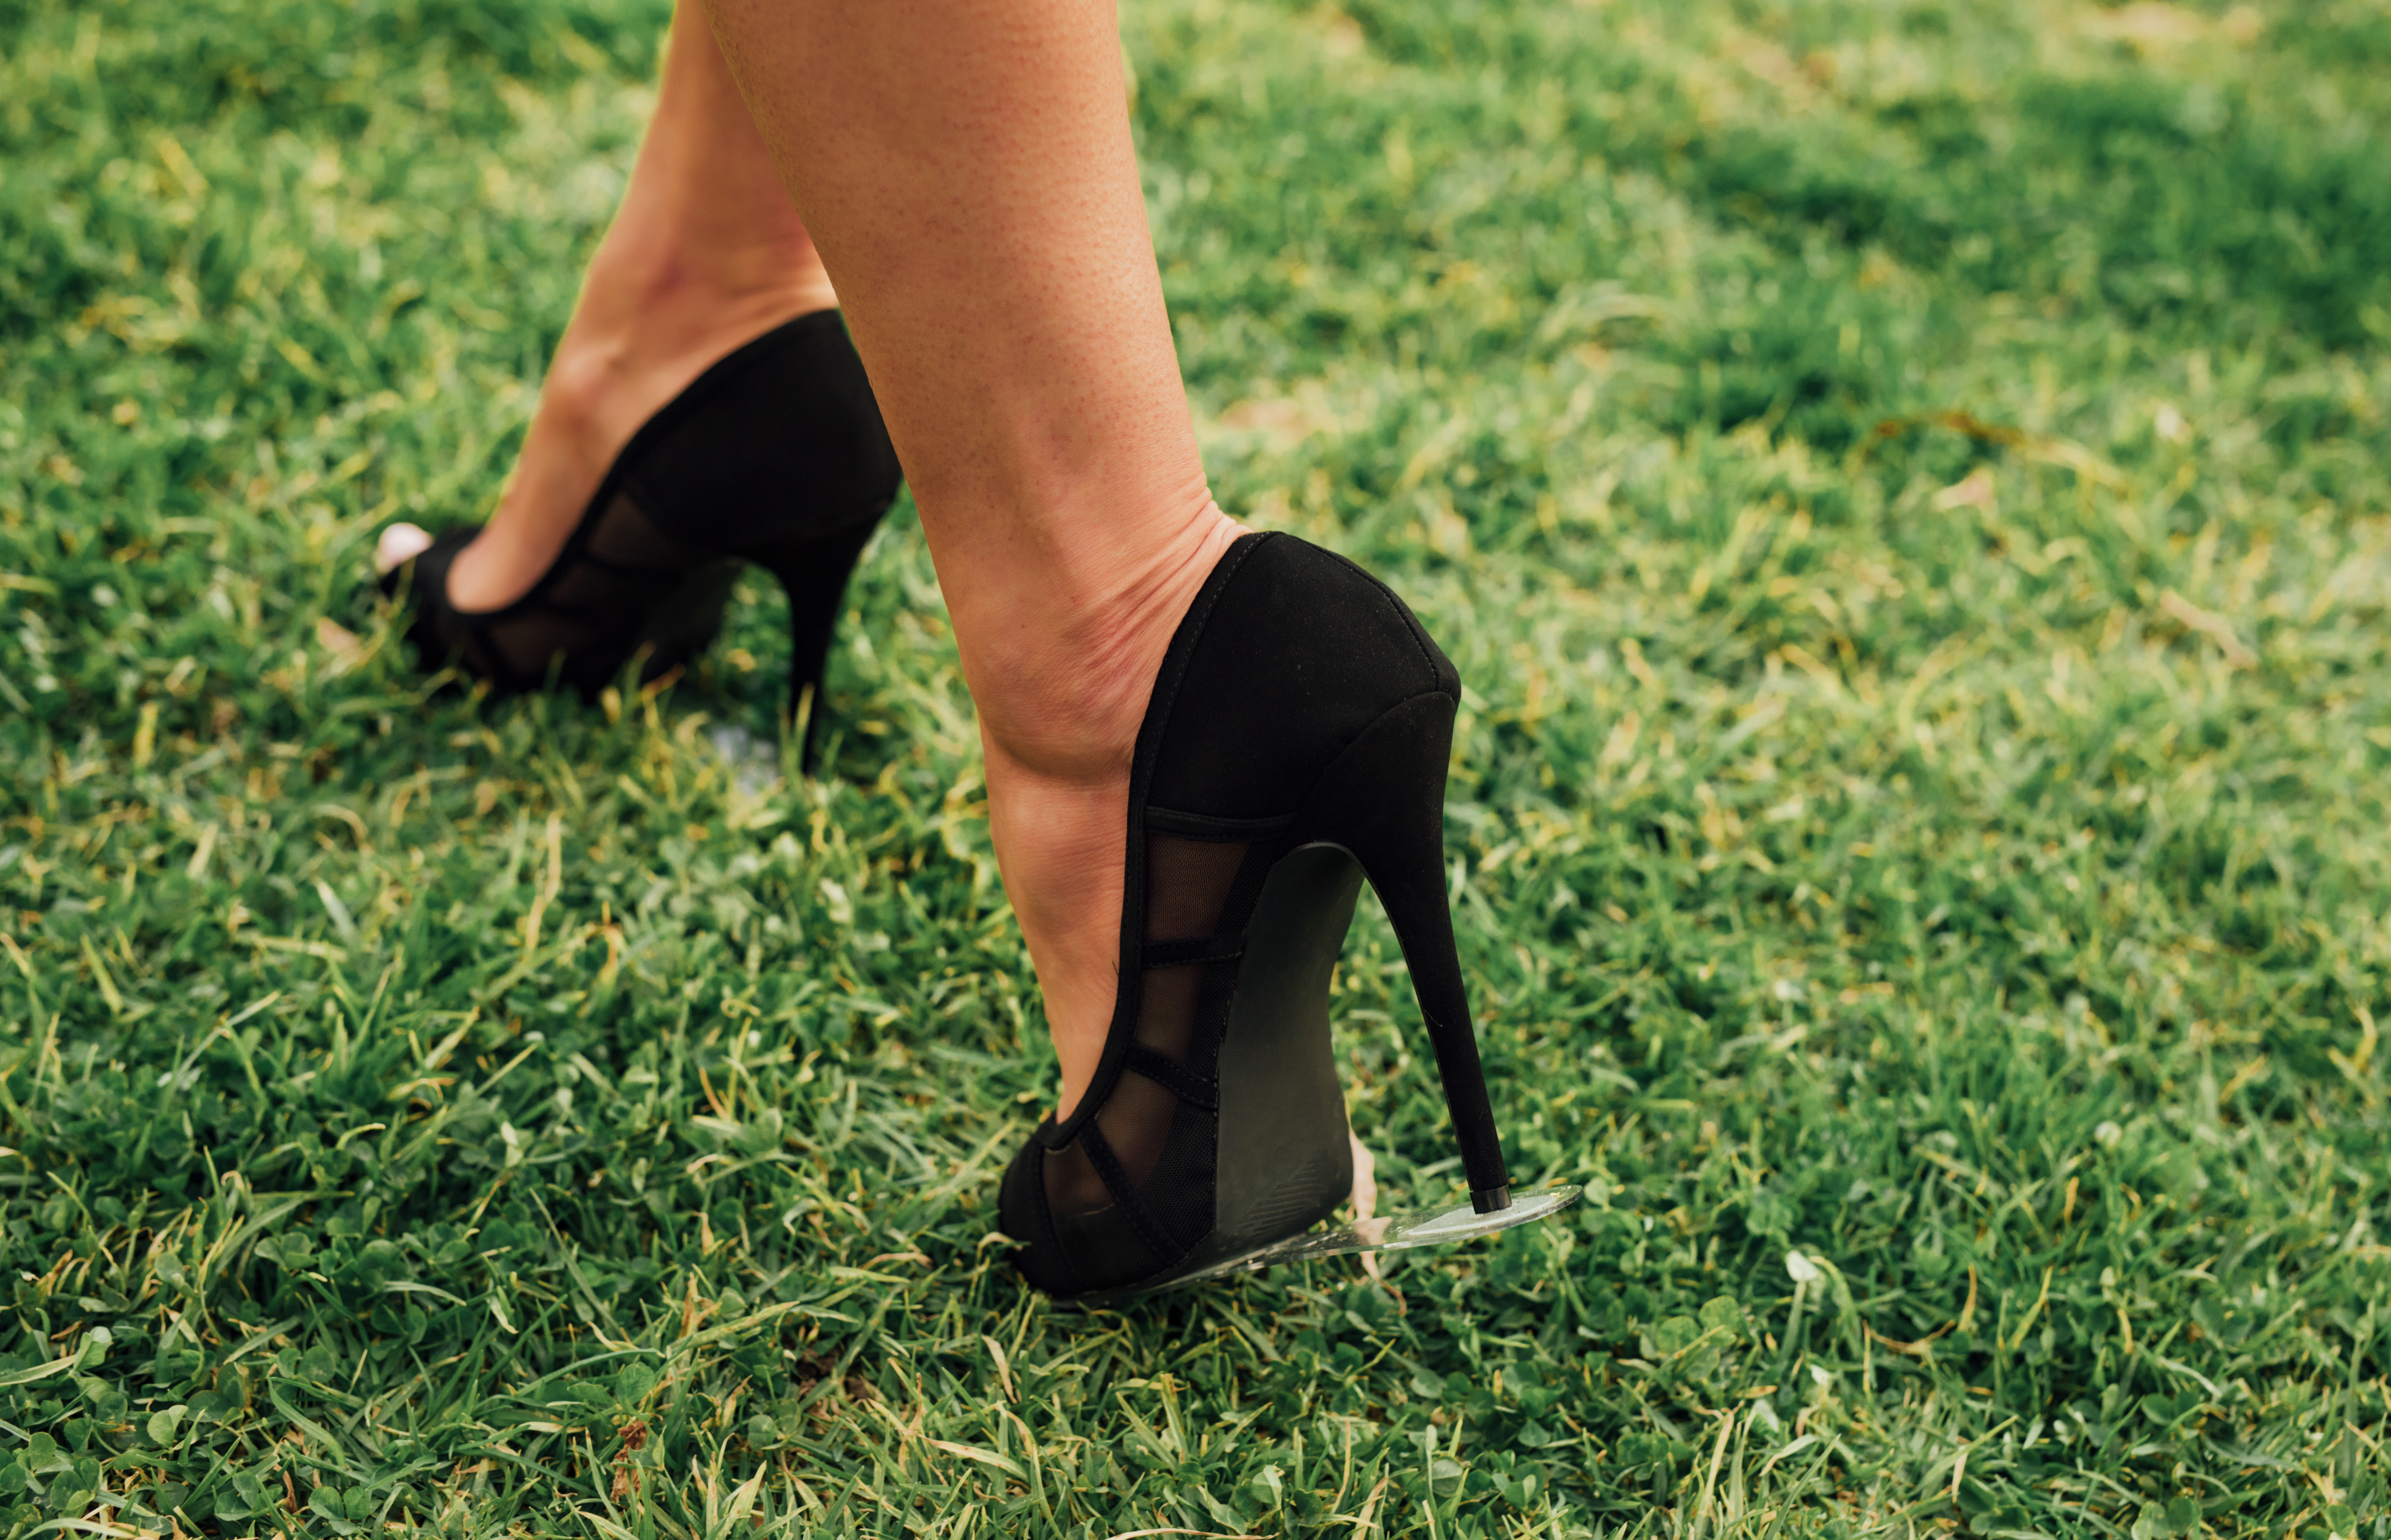 walk on grass in heels